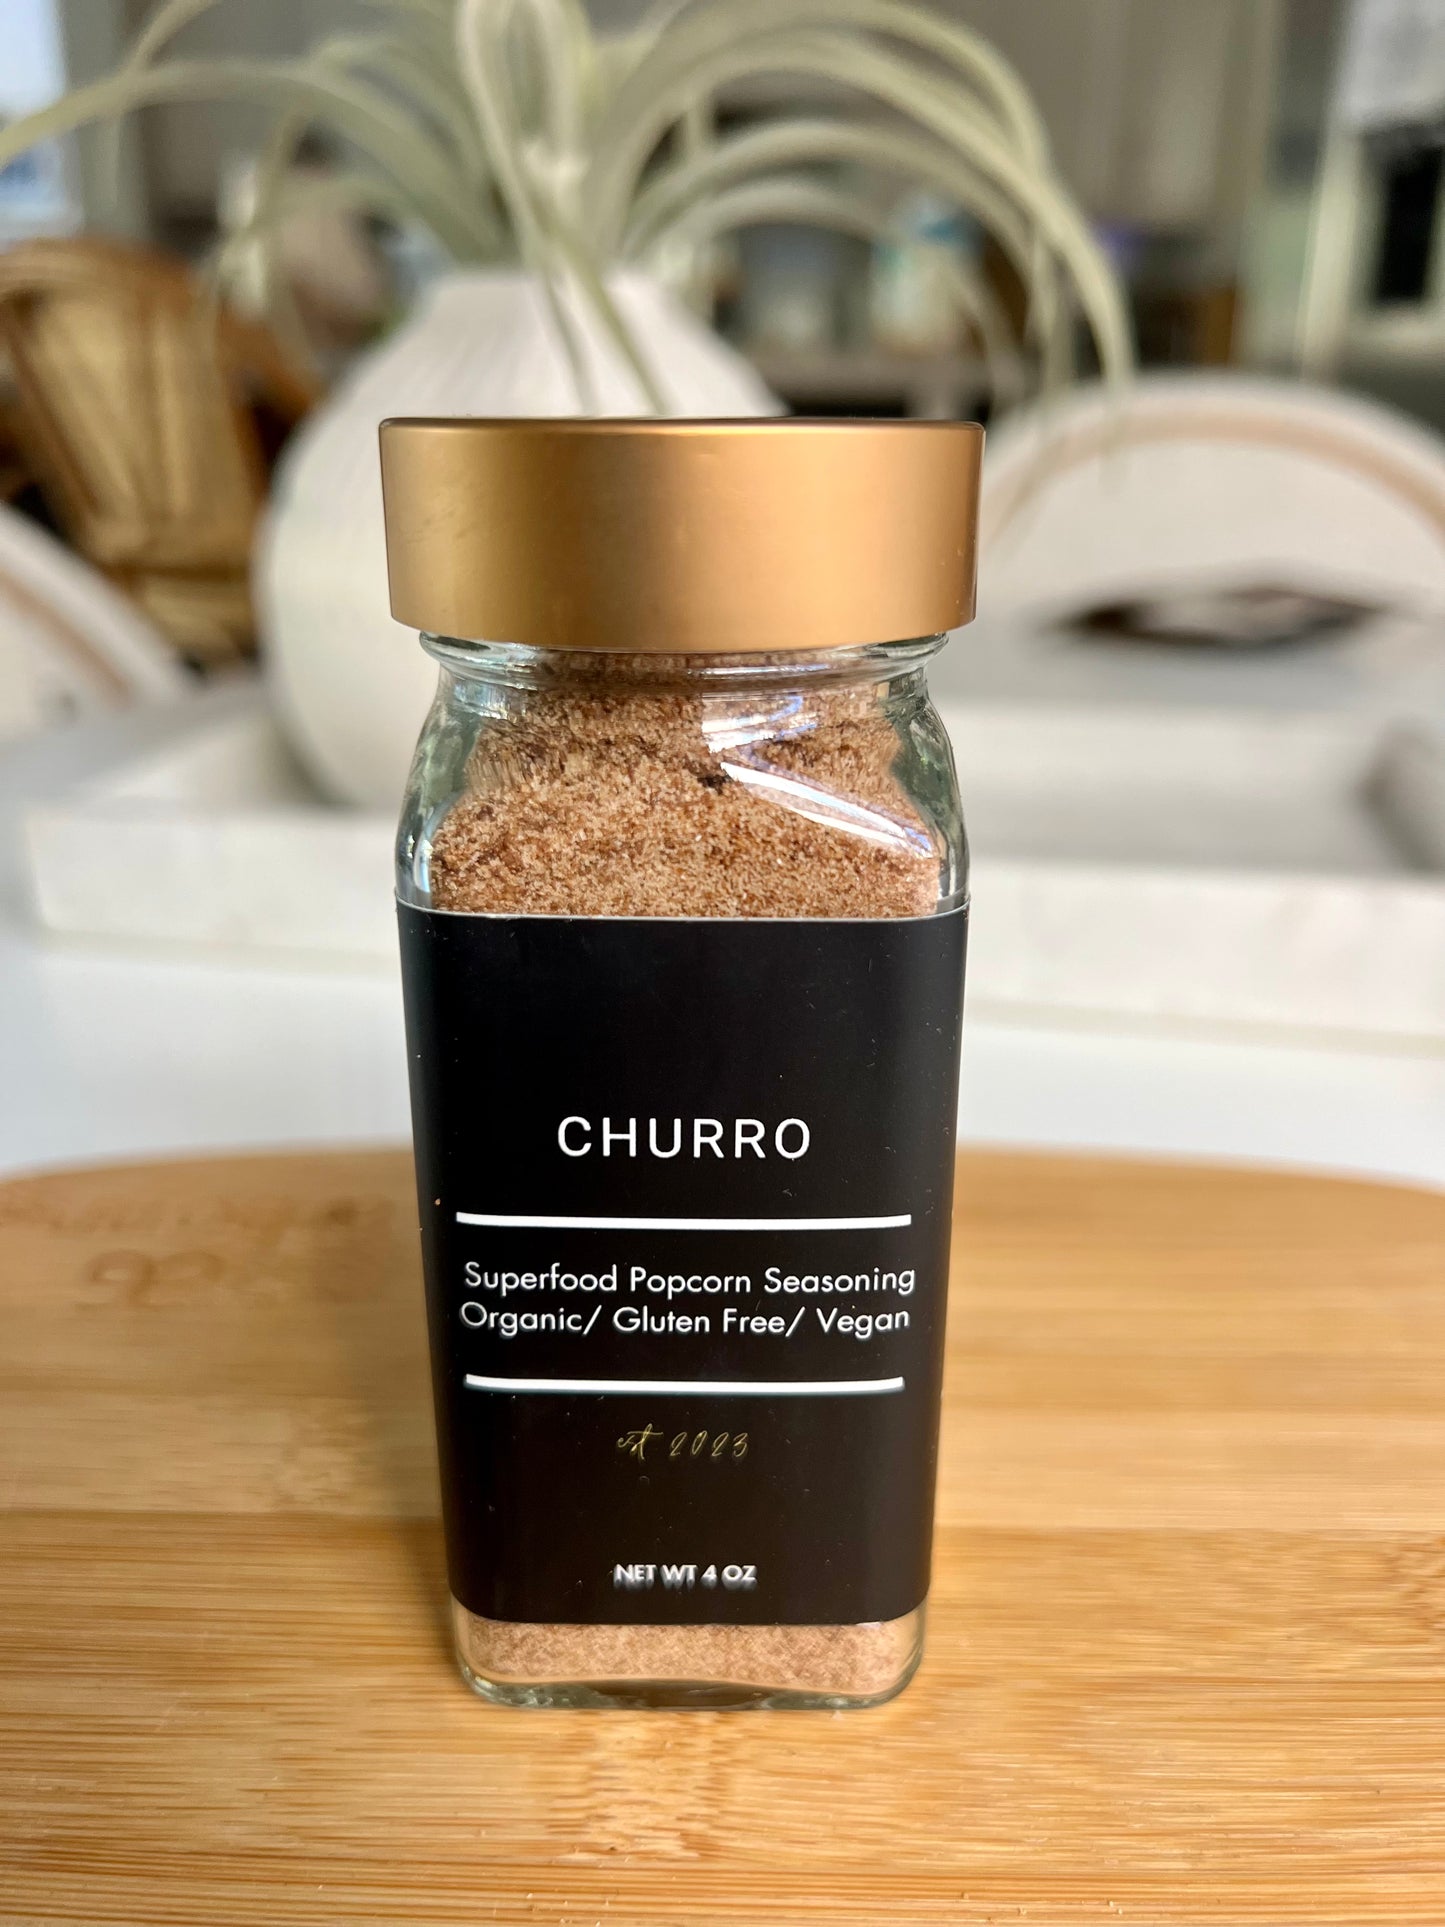 Churro Popcorn Seasoning